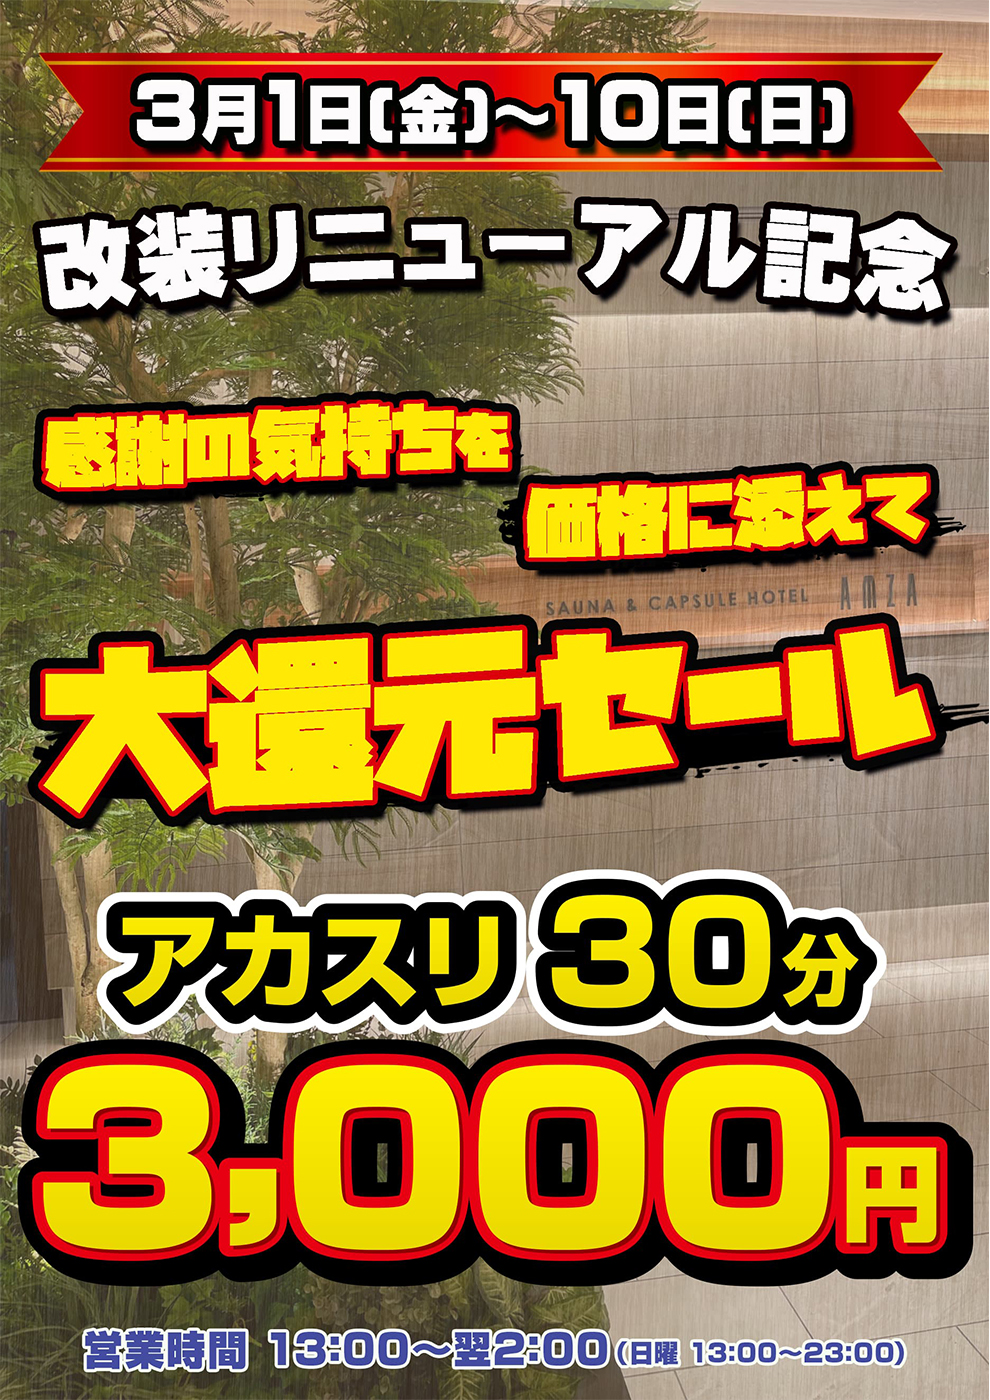 改装リニューアル記念“アカスリ30分 3,000円”